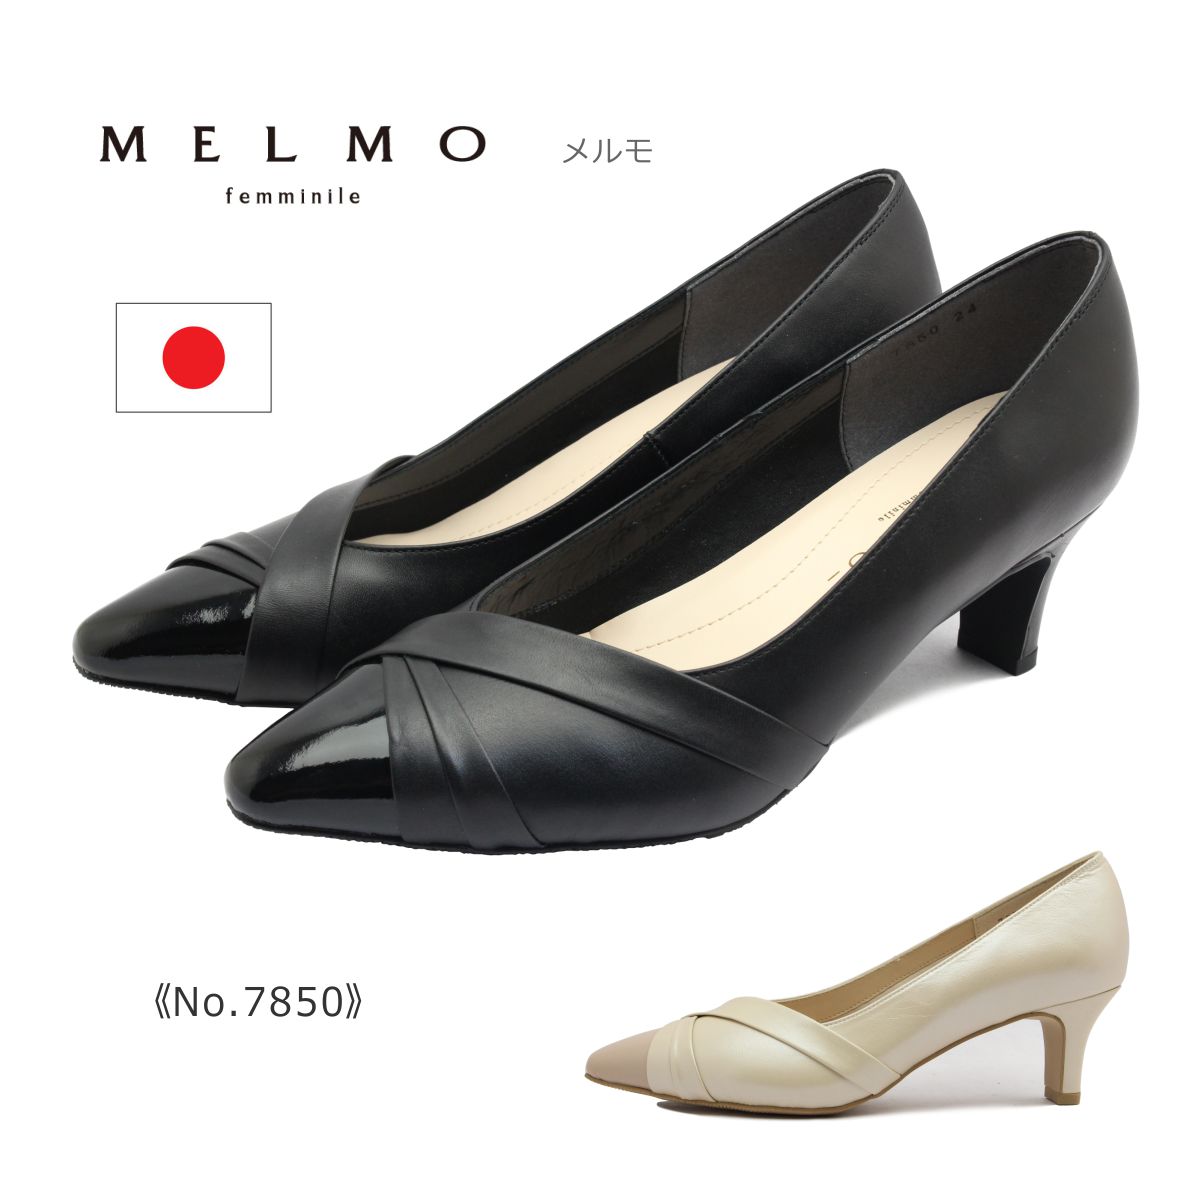 メルモ MELMO メルモ レディース パンプス 7850 ポインテッドトゥ デザイン 本革 靴 黒 ブラック ベージュ